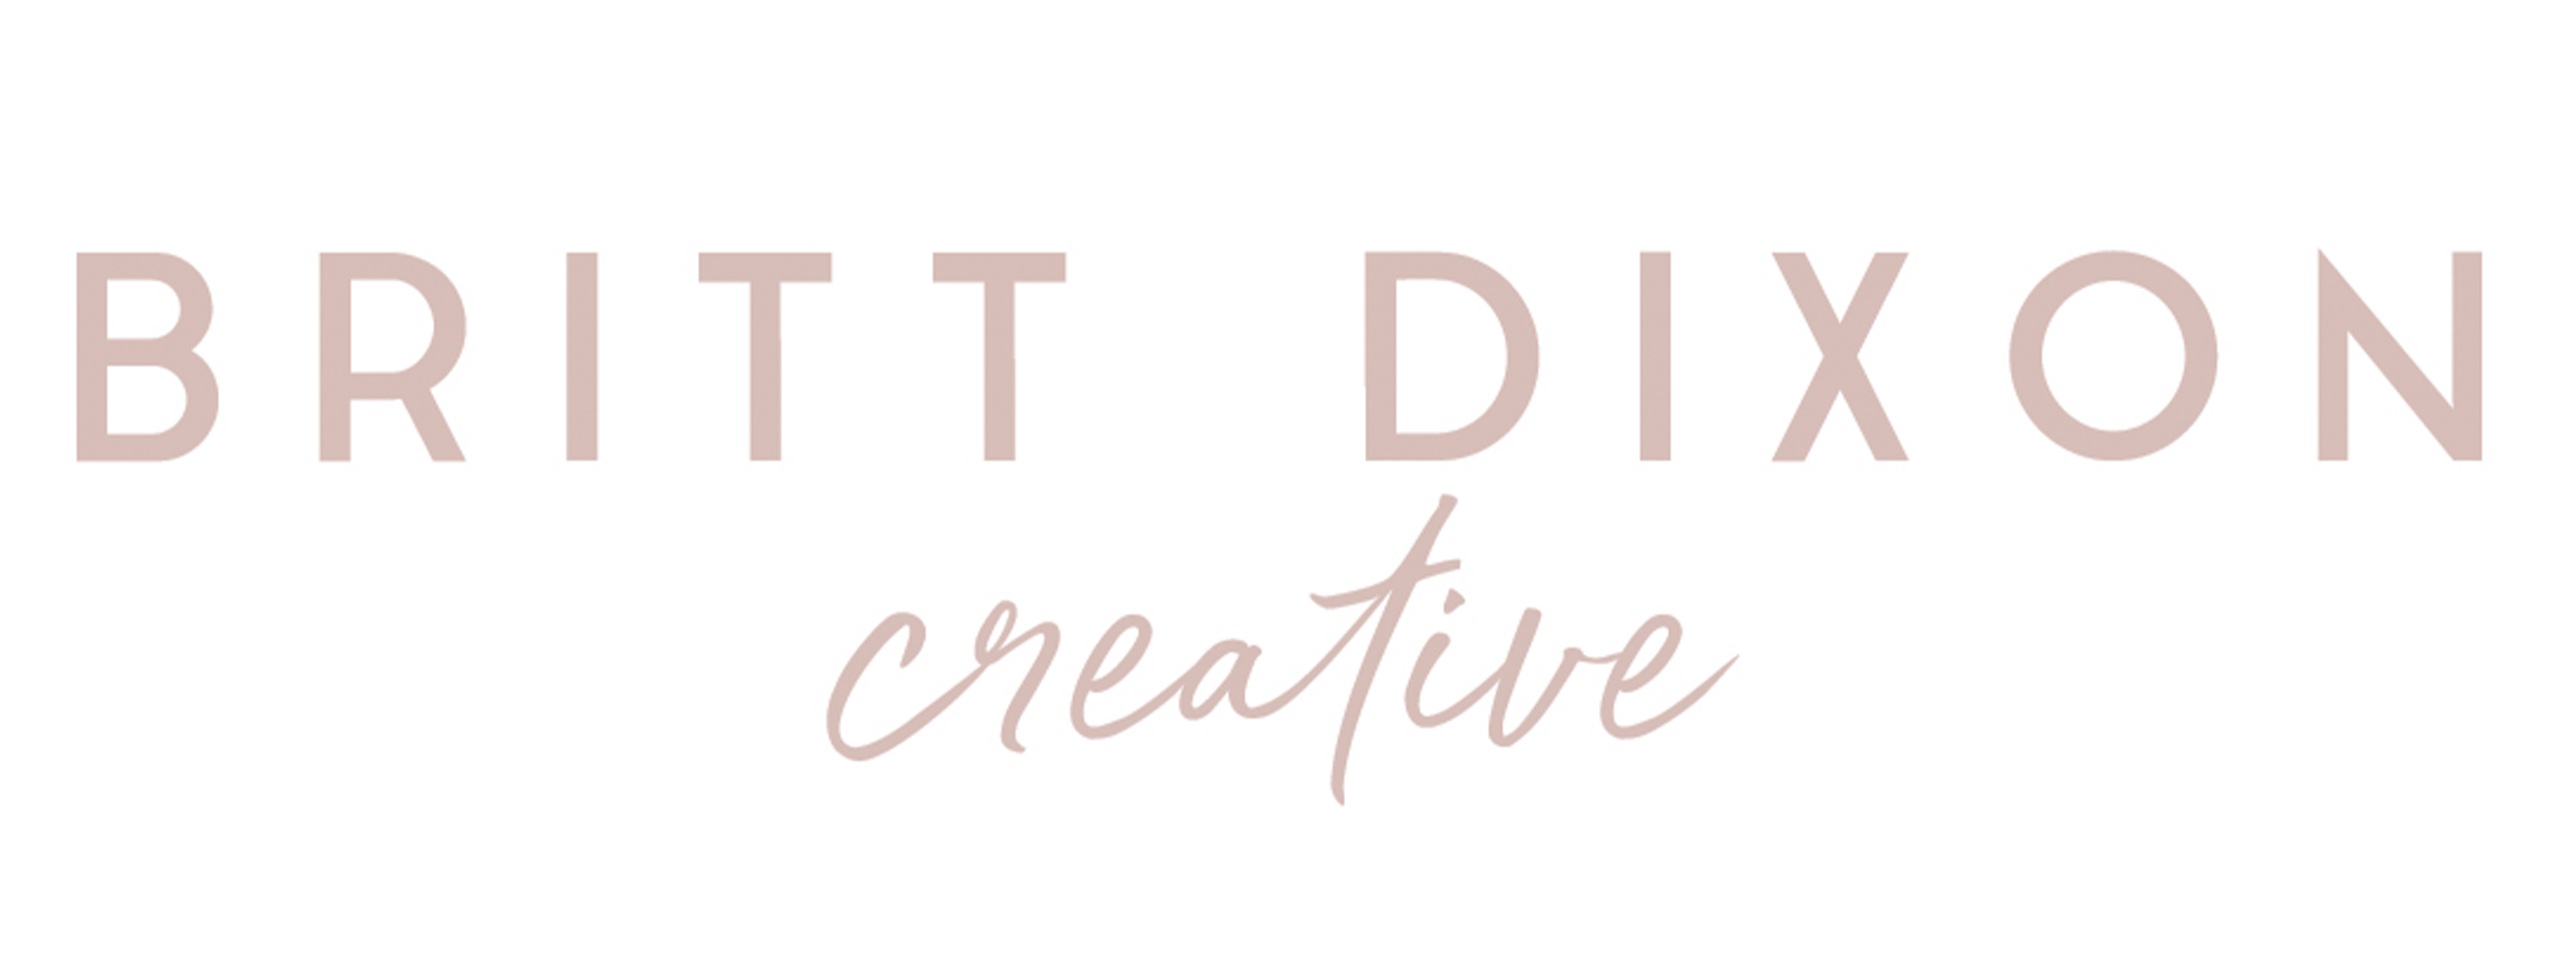 Britt Dixon Creative logo